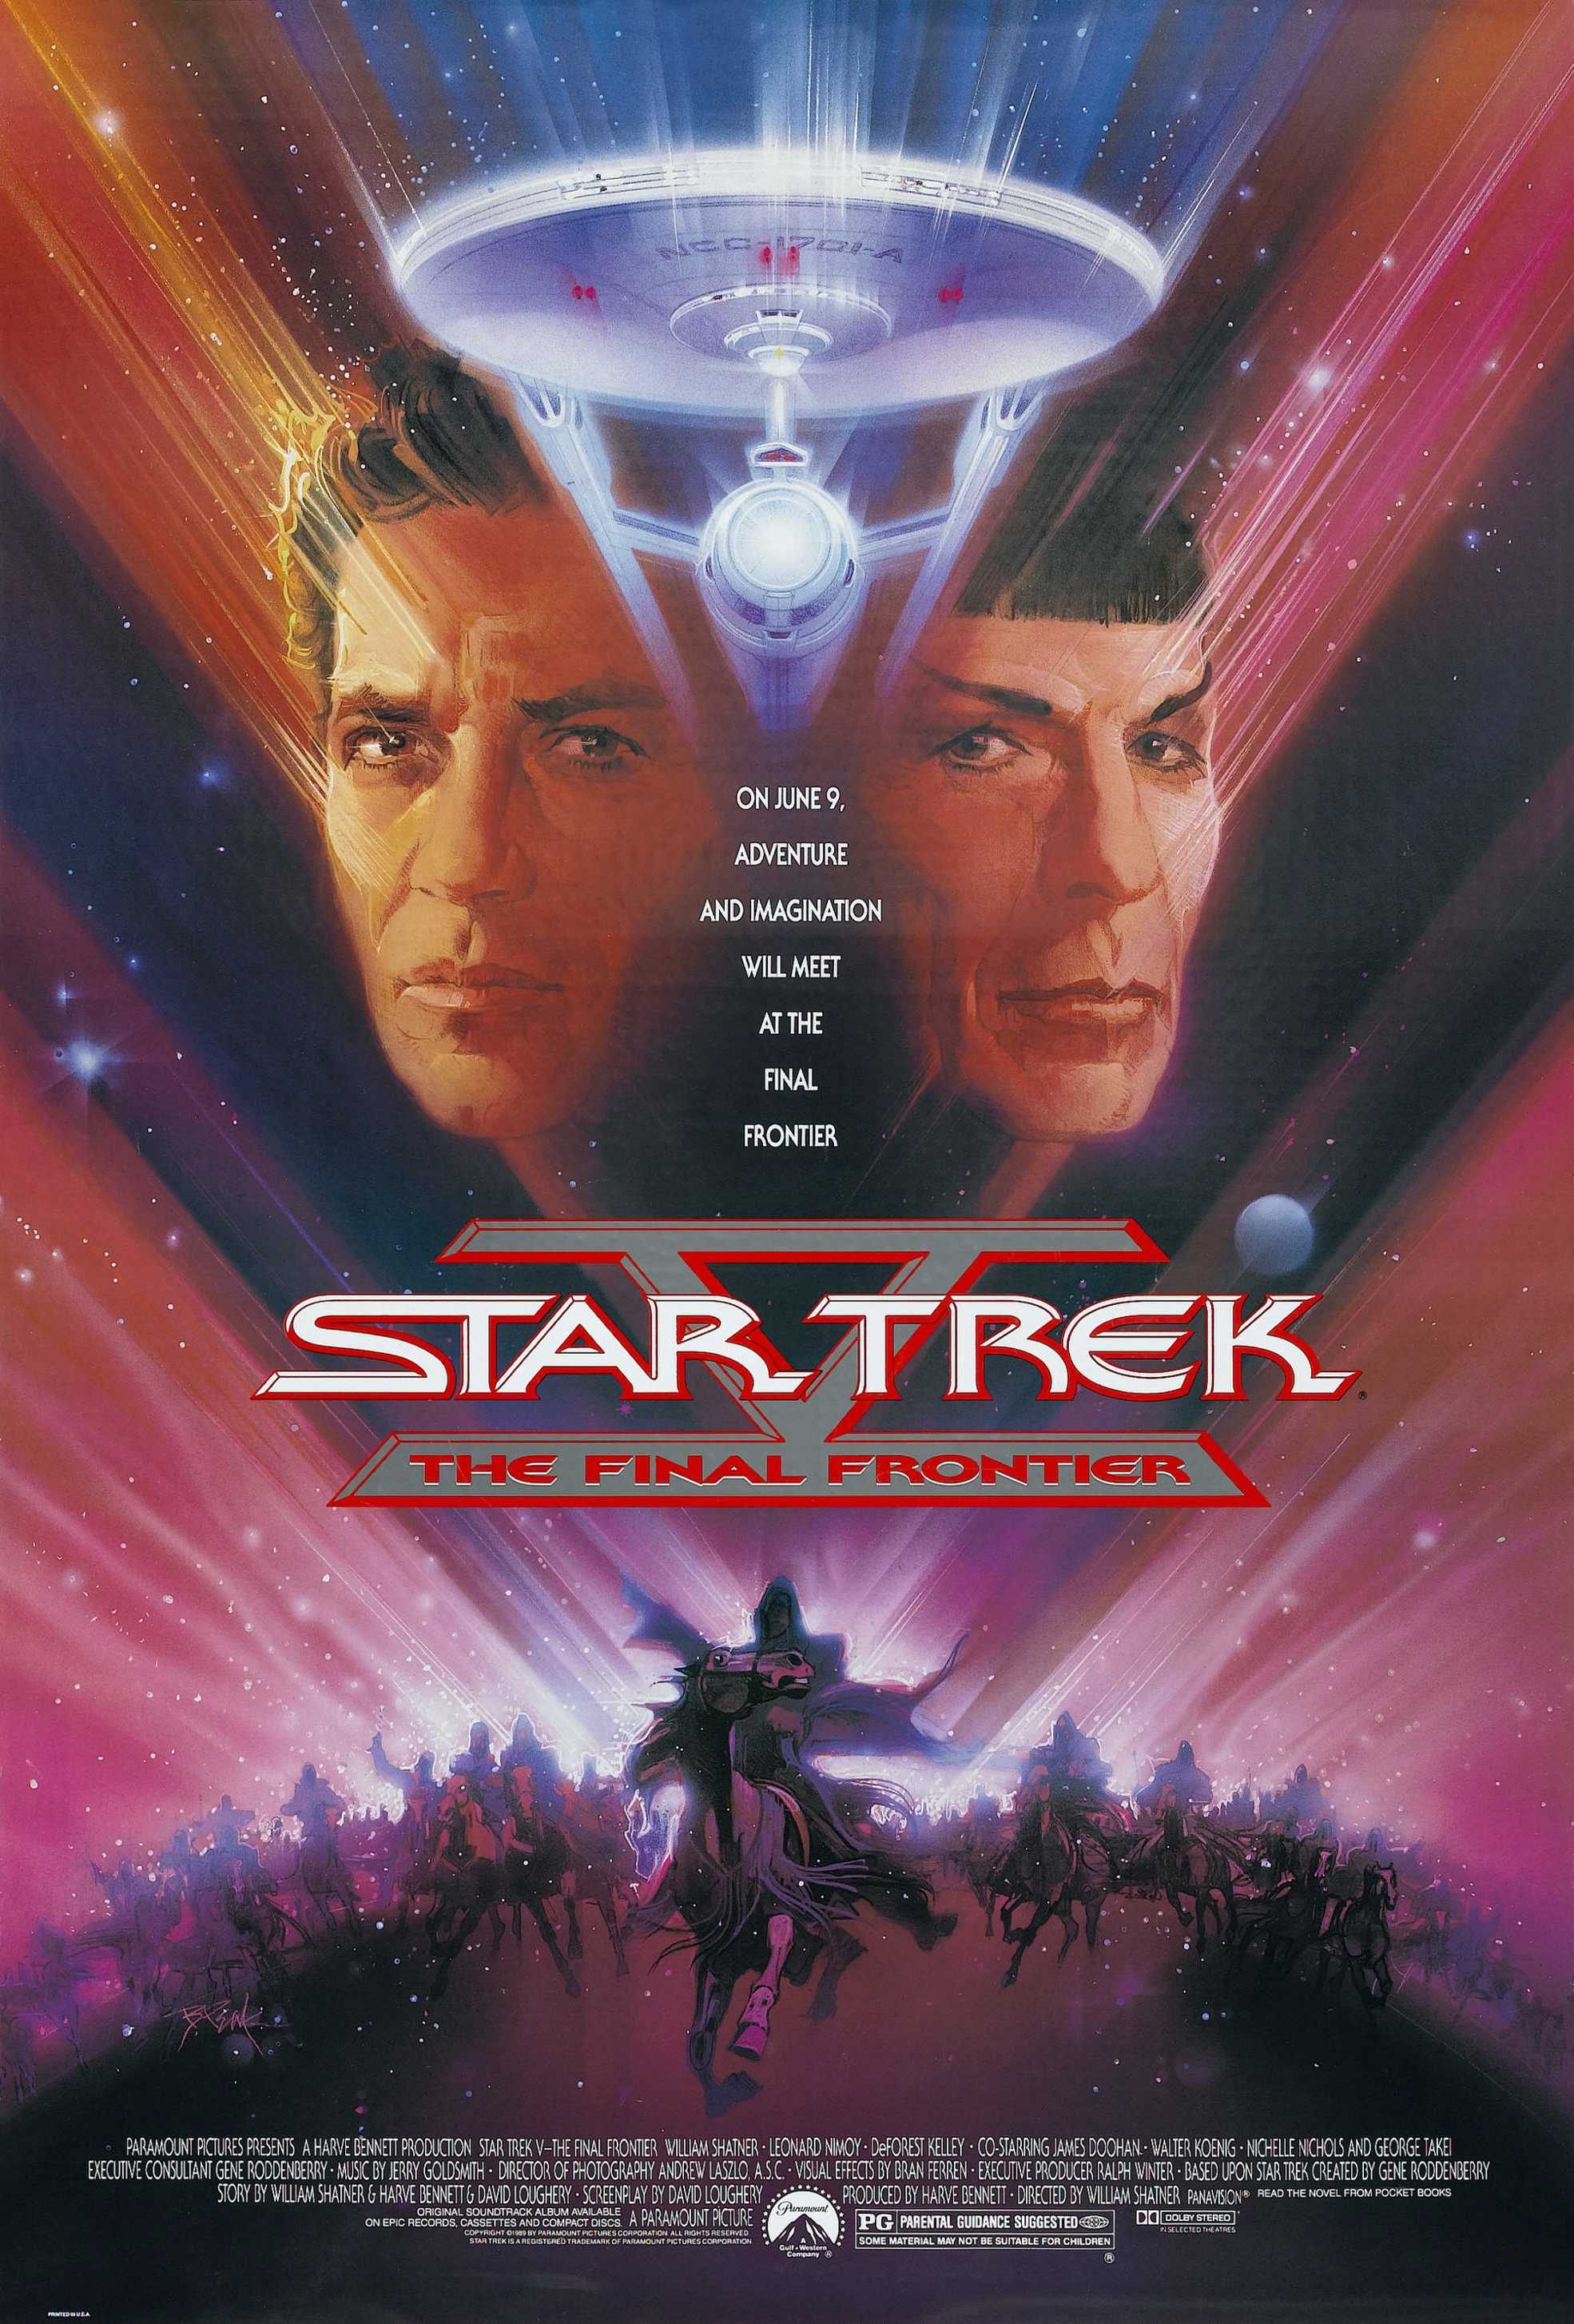 Star trek v: biên giới cuối cùng - Star trek v: the final frontier